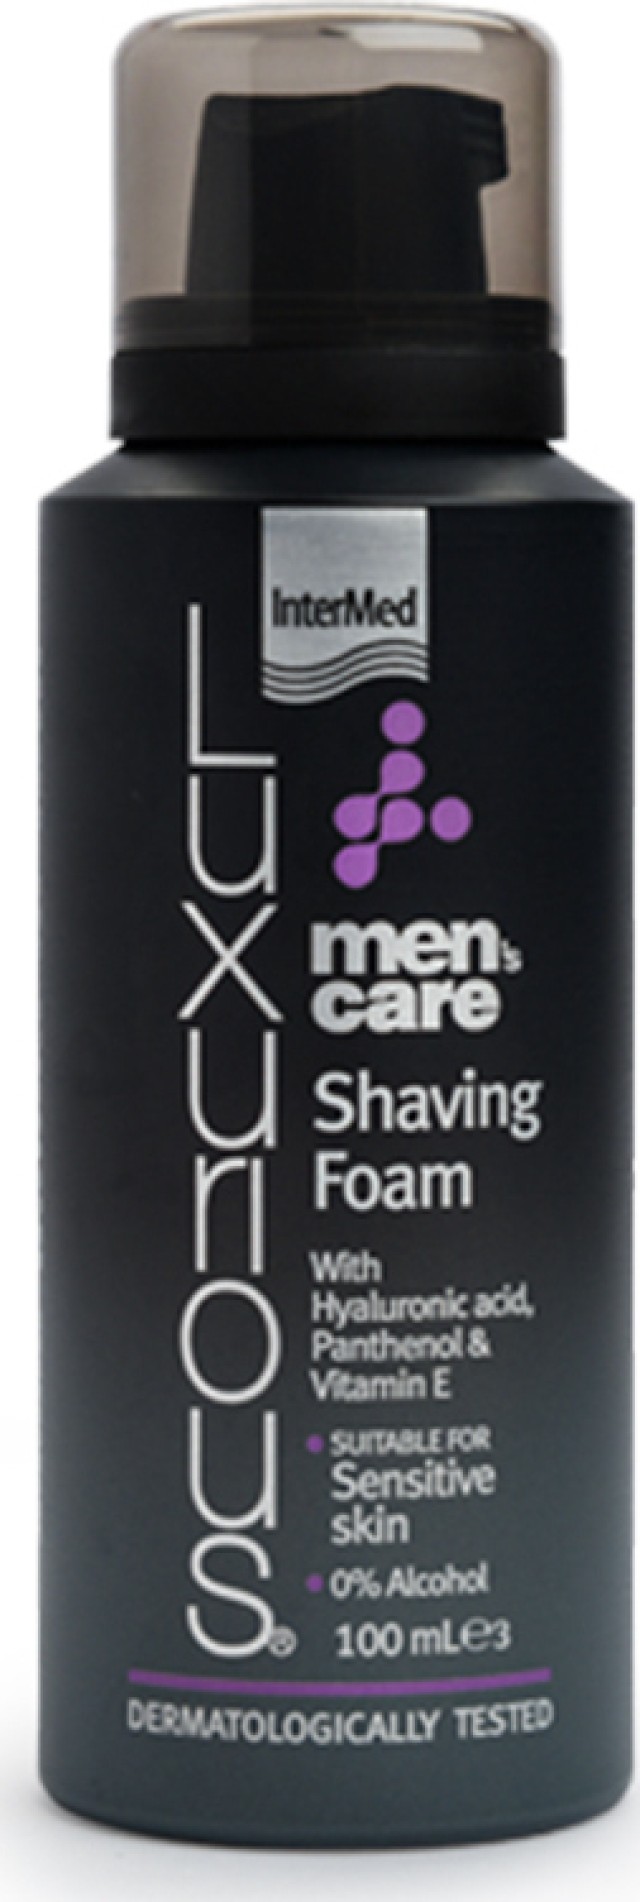 Intermed Luxurious Men's Care Shaving Foam Πλούσιος Αφρός για Απαλό Ξύρισμα Χωρίς Ερεθισμούς 100ml